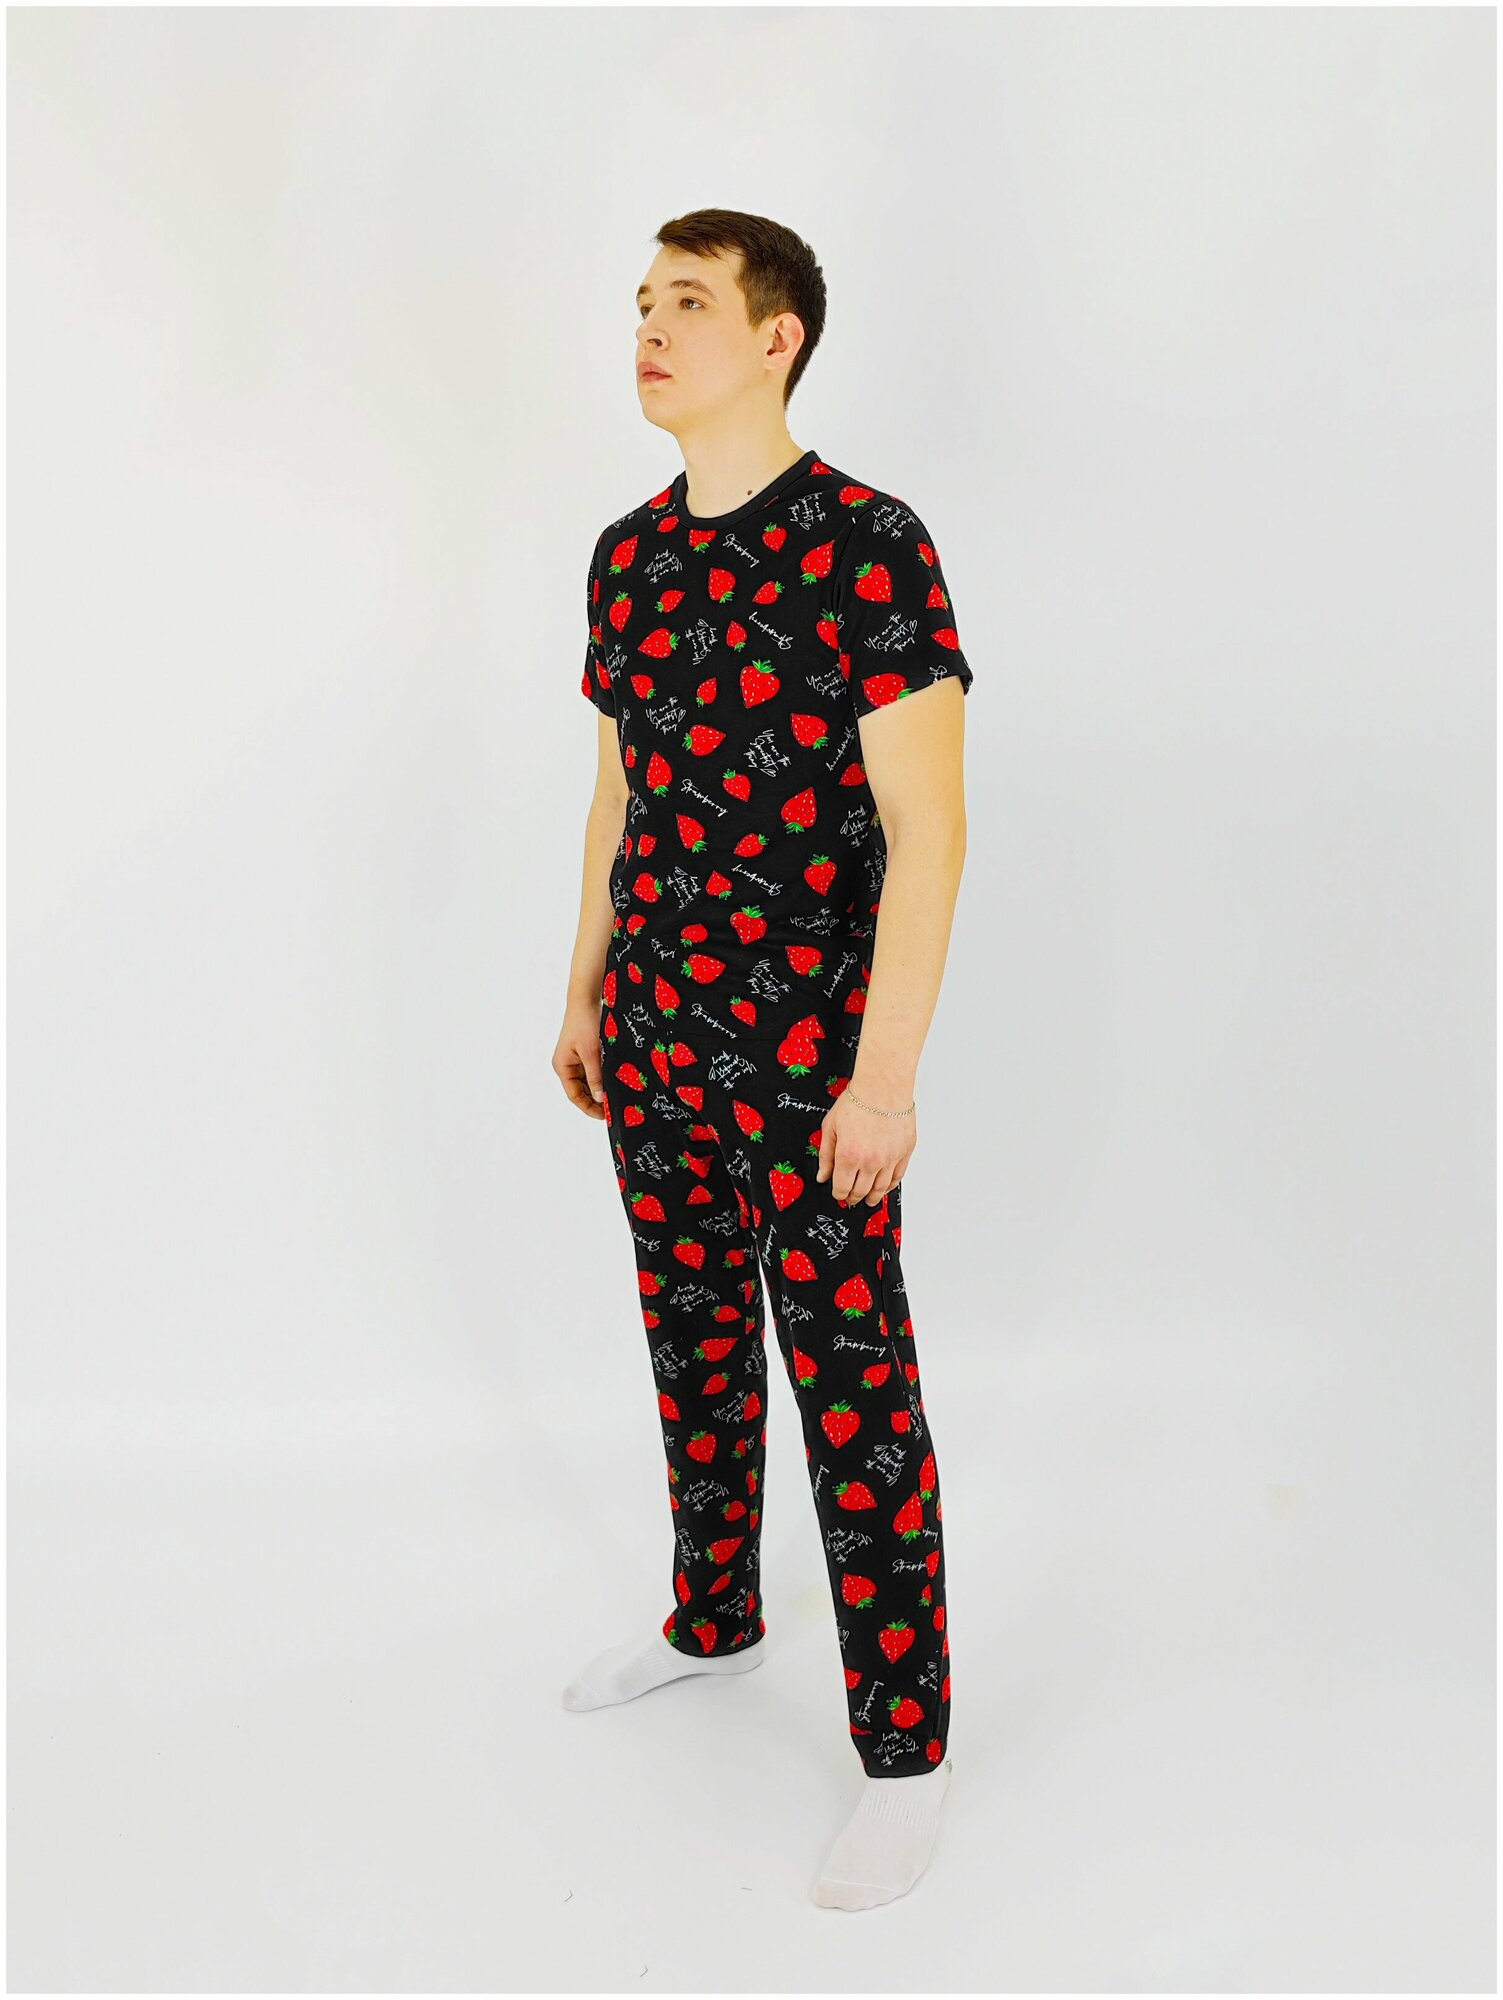 Мужская пижама, мужской пижамный комплект ARISTARHOV, Футболка + Брюки, Клубничка, черный алый, размер 44 - фотография № 5